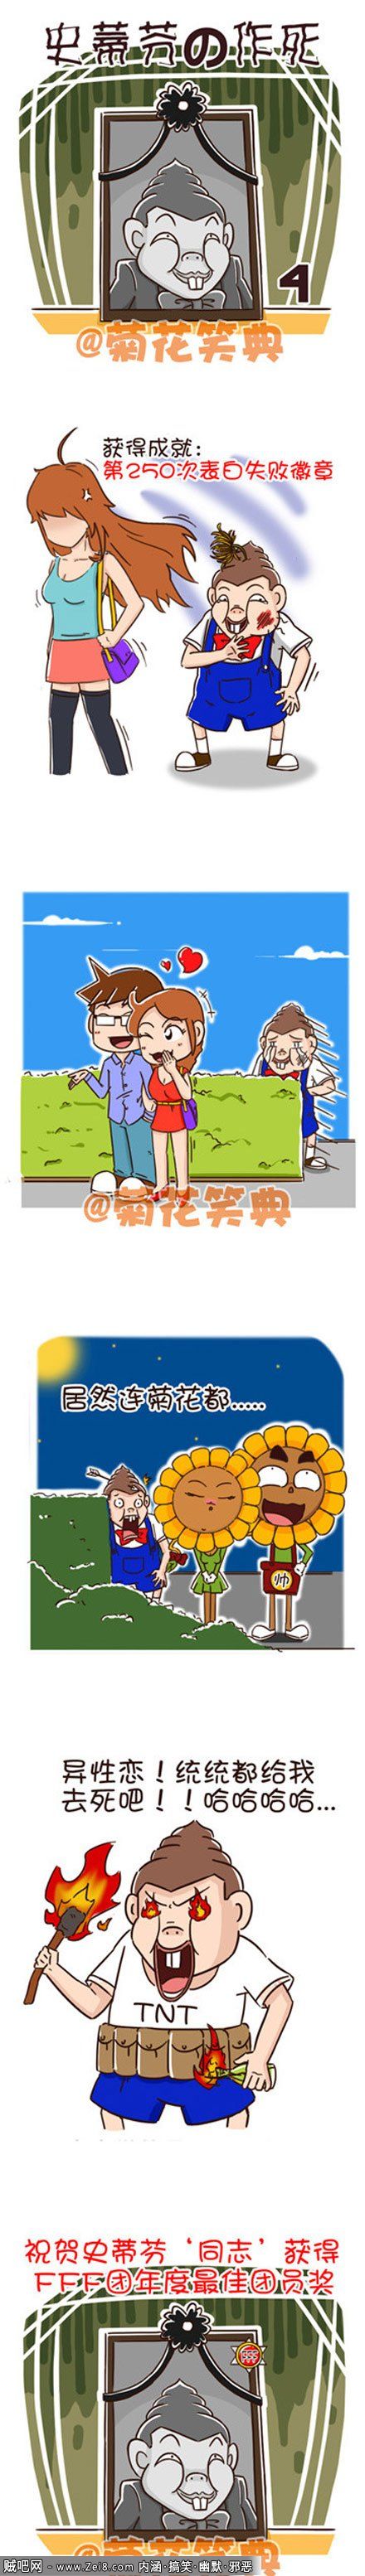 【韩国菊花笑典漫画】屌丝的爱情